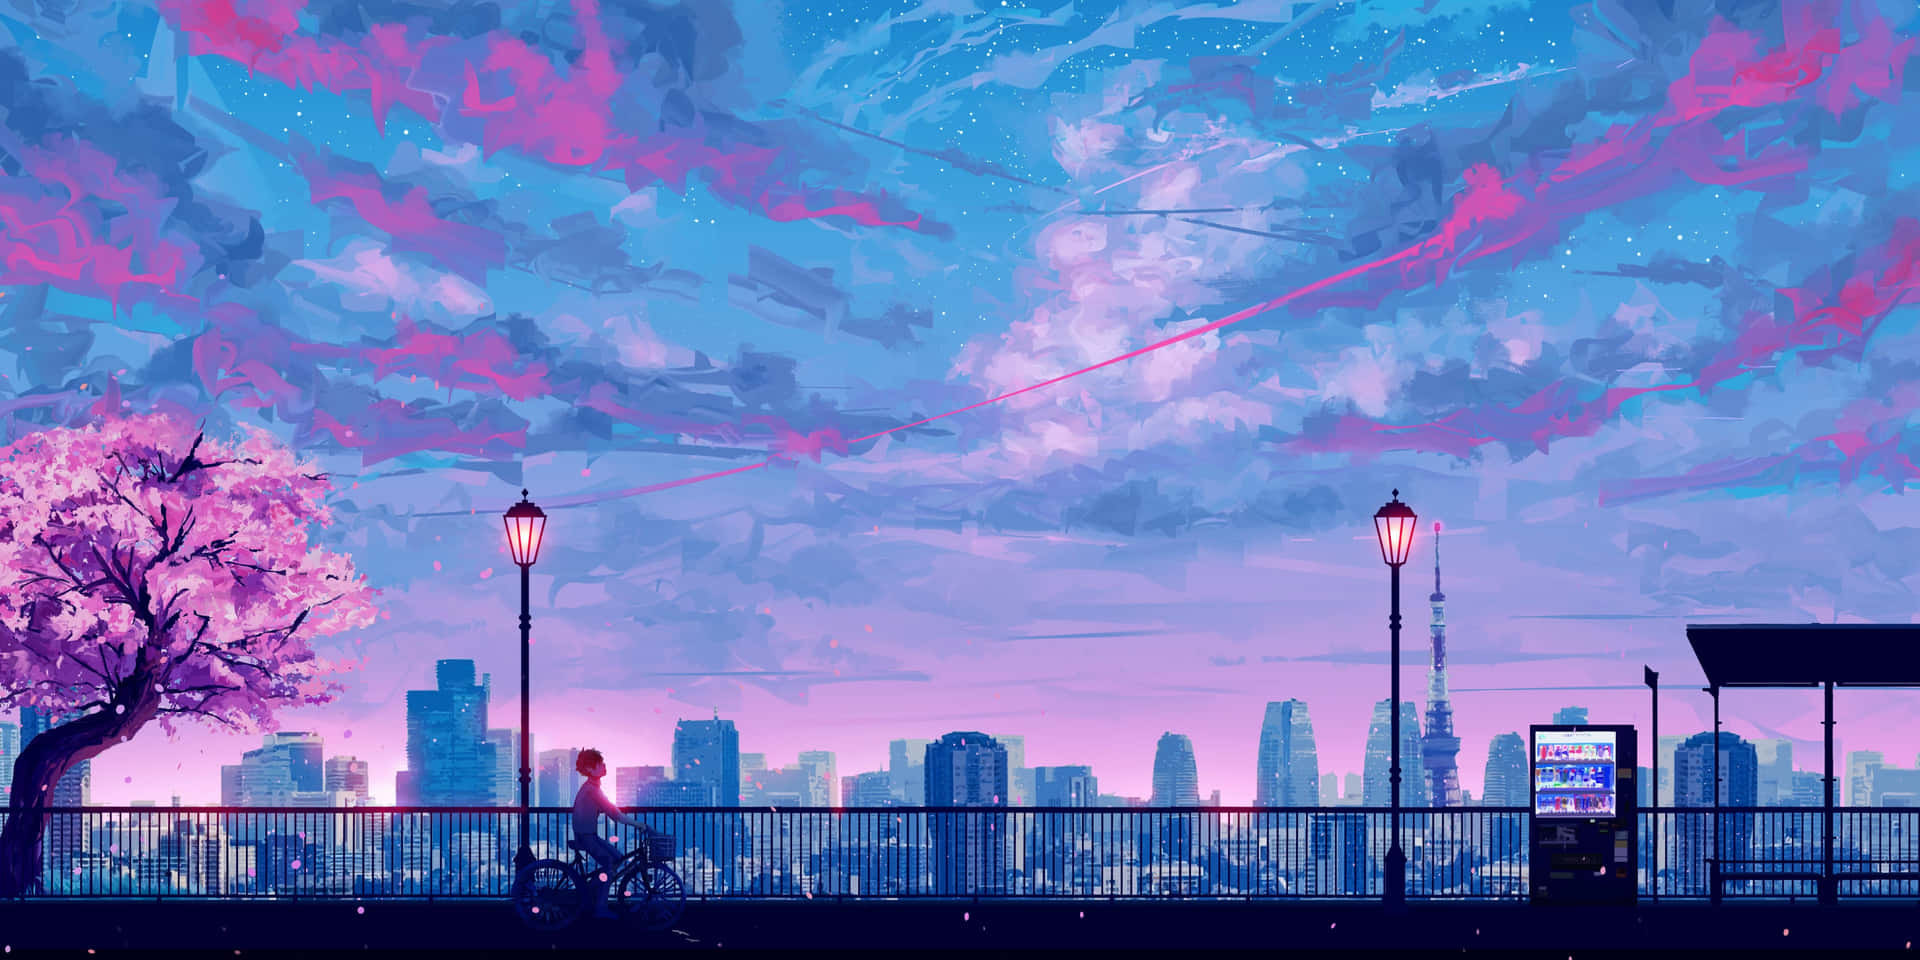 Aesthetic Ghibli Background Art Wallpaper Artgreen Stock Illustration  2115154652  Shutterstock